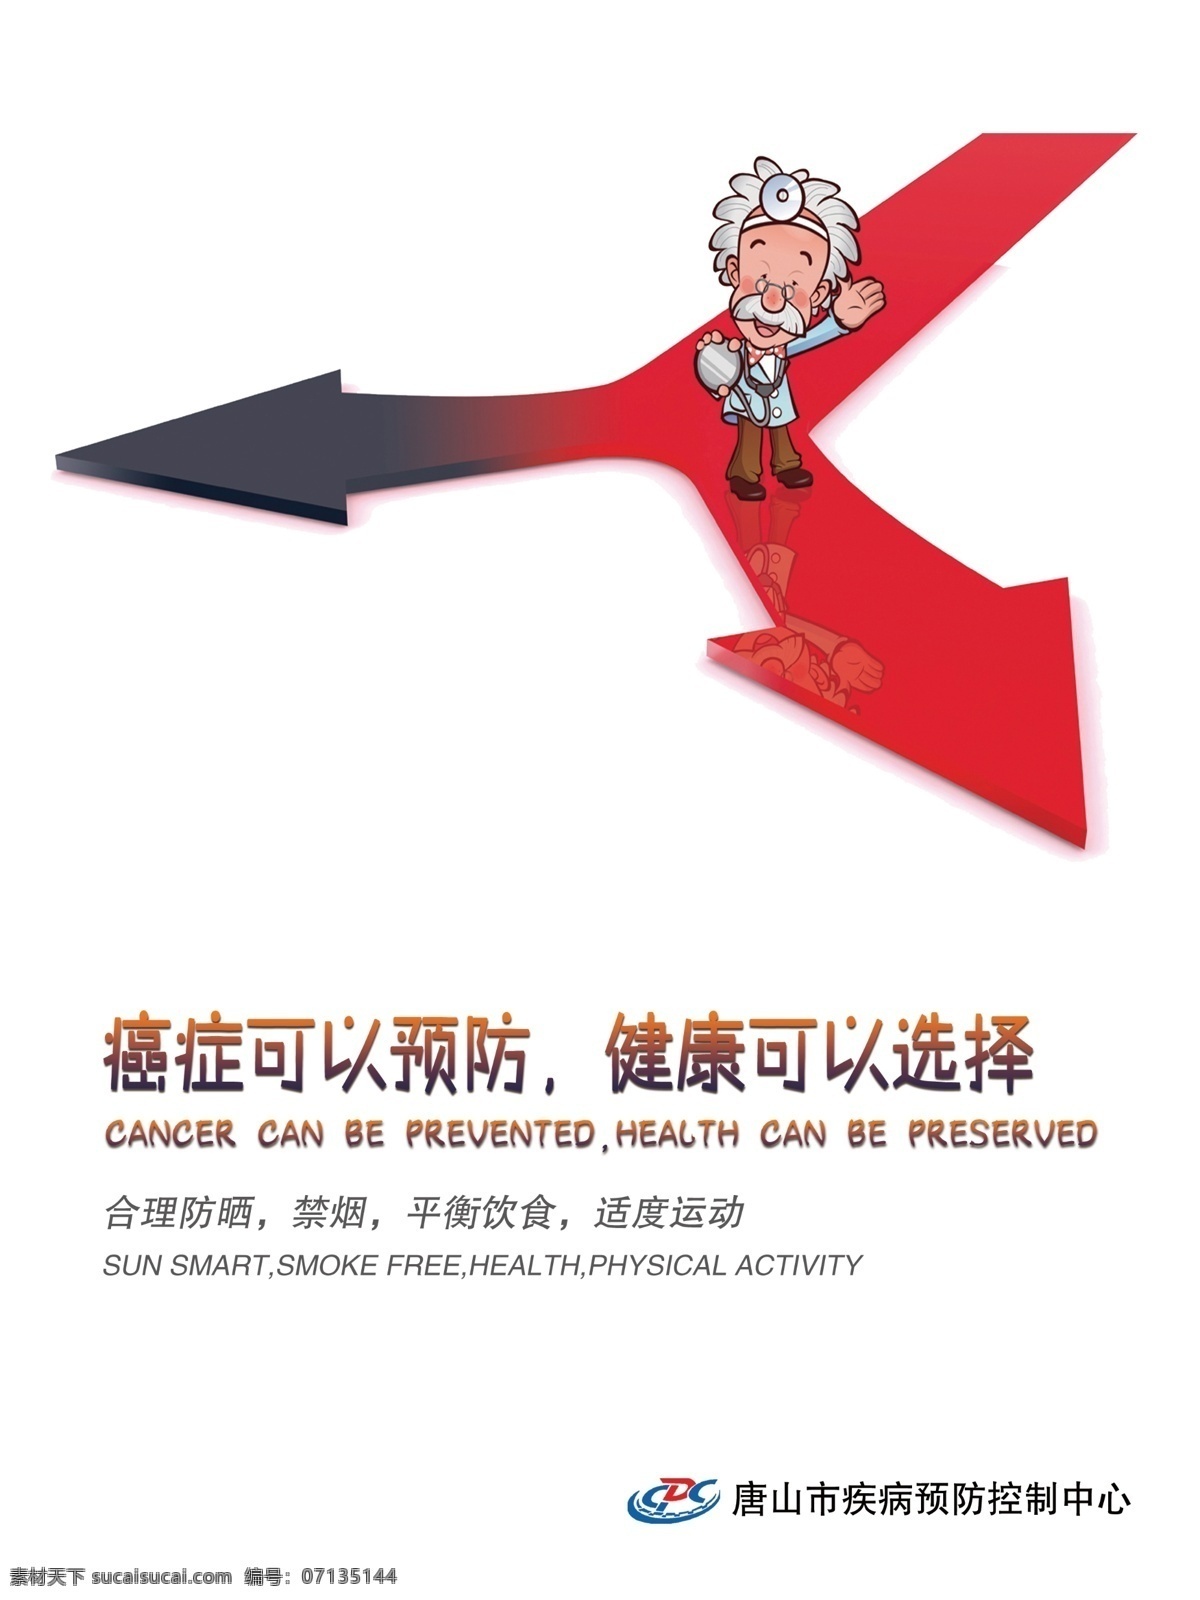 红色箭头 岔道路口 癌症可以预防 健康可以选择 疾控海报 创意海报 合理防晒 禁烟 平衡饮食 适度运动